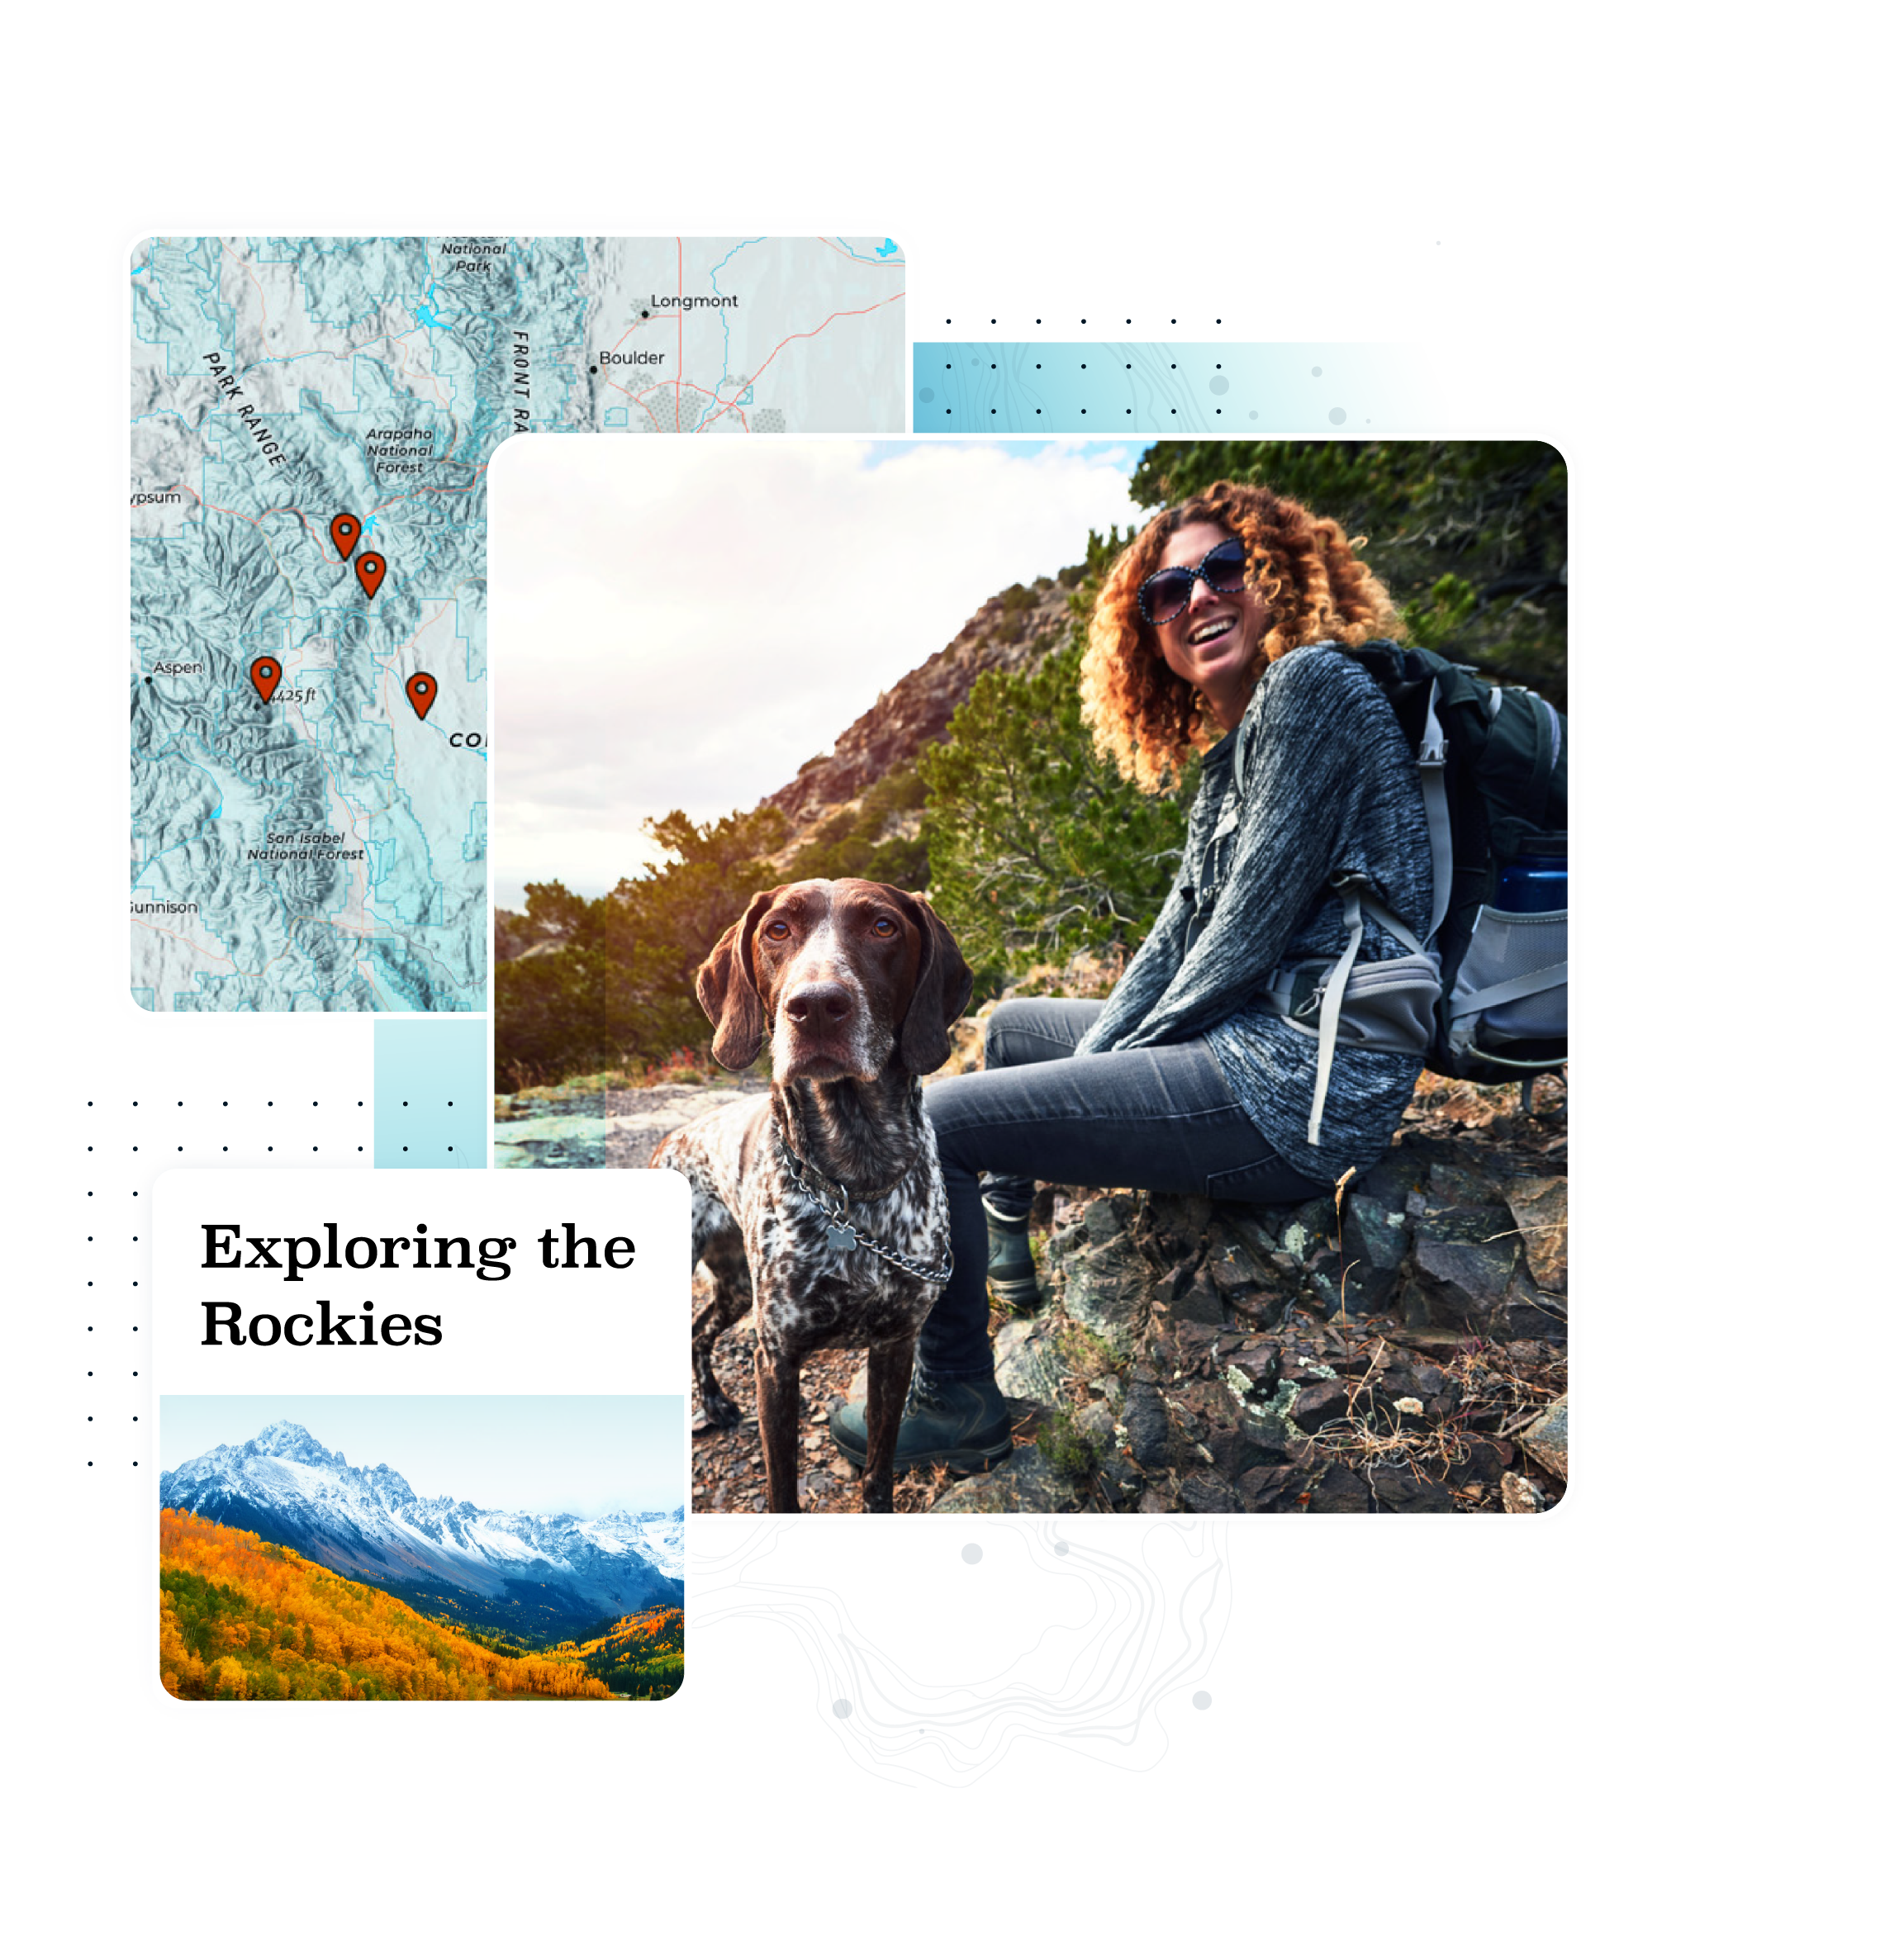 Carte du Colorado. Une femme portant un sac à dos sourit sur un rocher avec son chien. Montagnes avec le texte « Exploration des montagnes Rocheuses ».